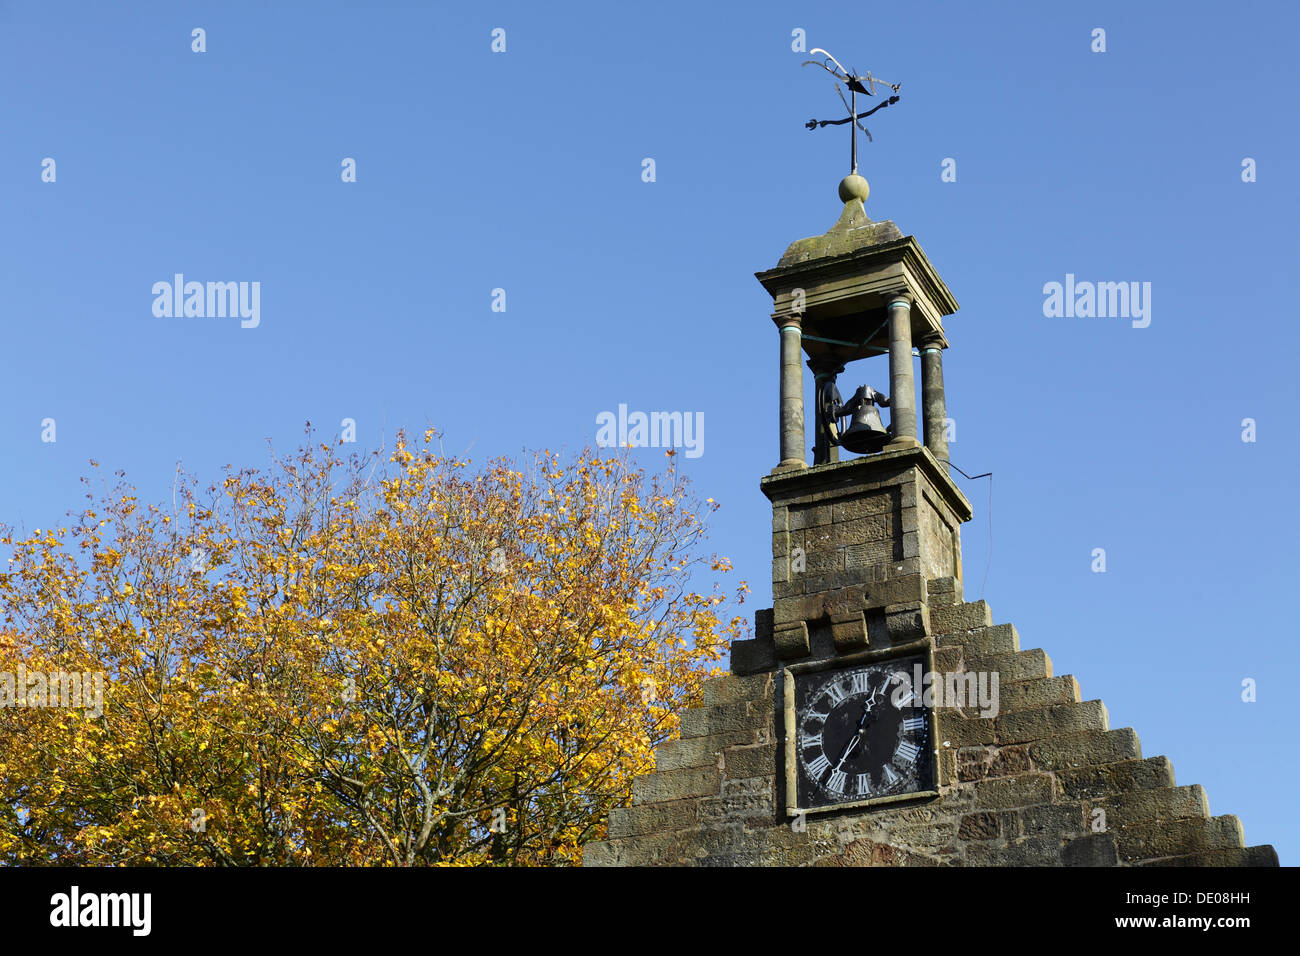 El hastial, el reloj y los restos de campana de una iglesia conocida como el Viejo Simón en otoño, Johnshill, Lochwinnoch, Renfrewshire, Escocia, REINO UNIDO Foto de stock